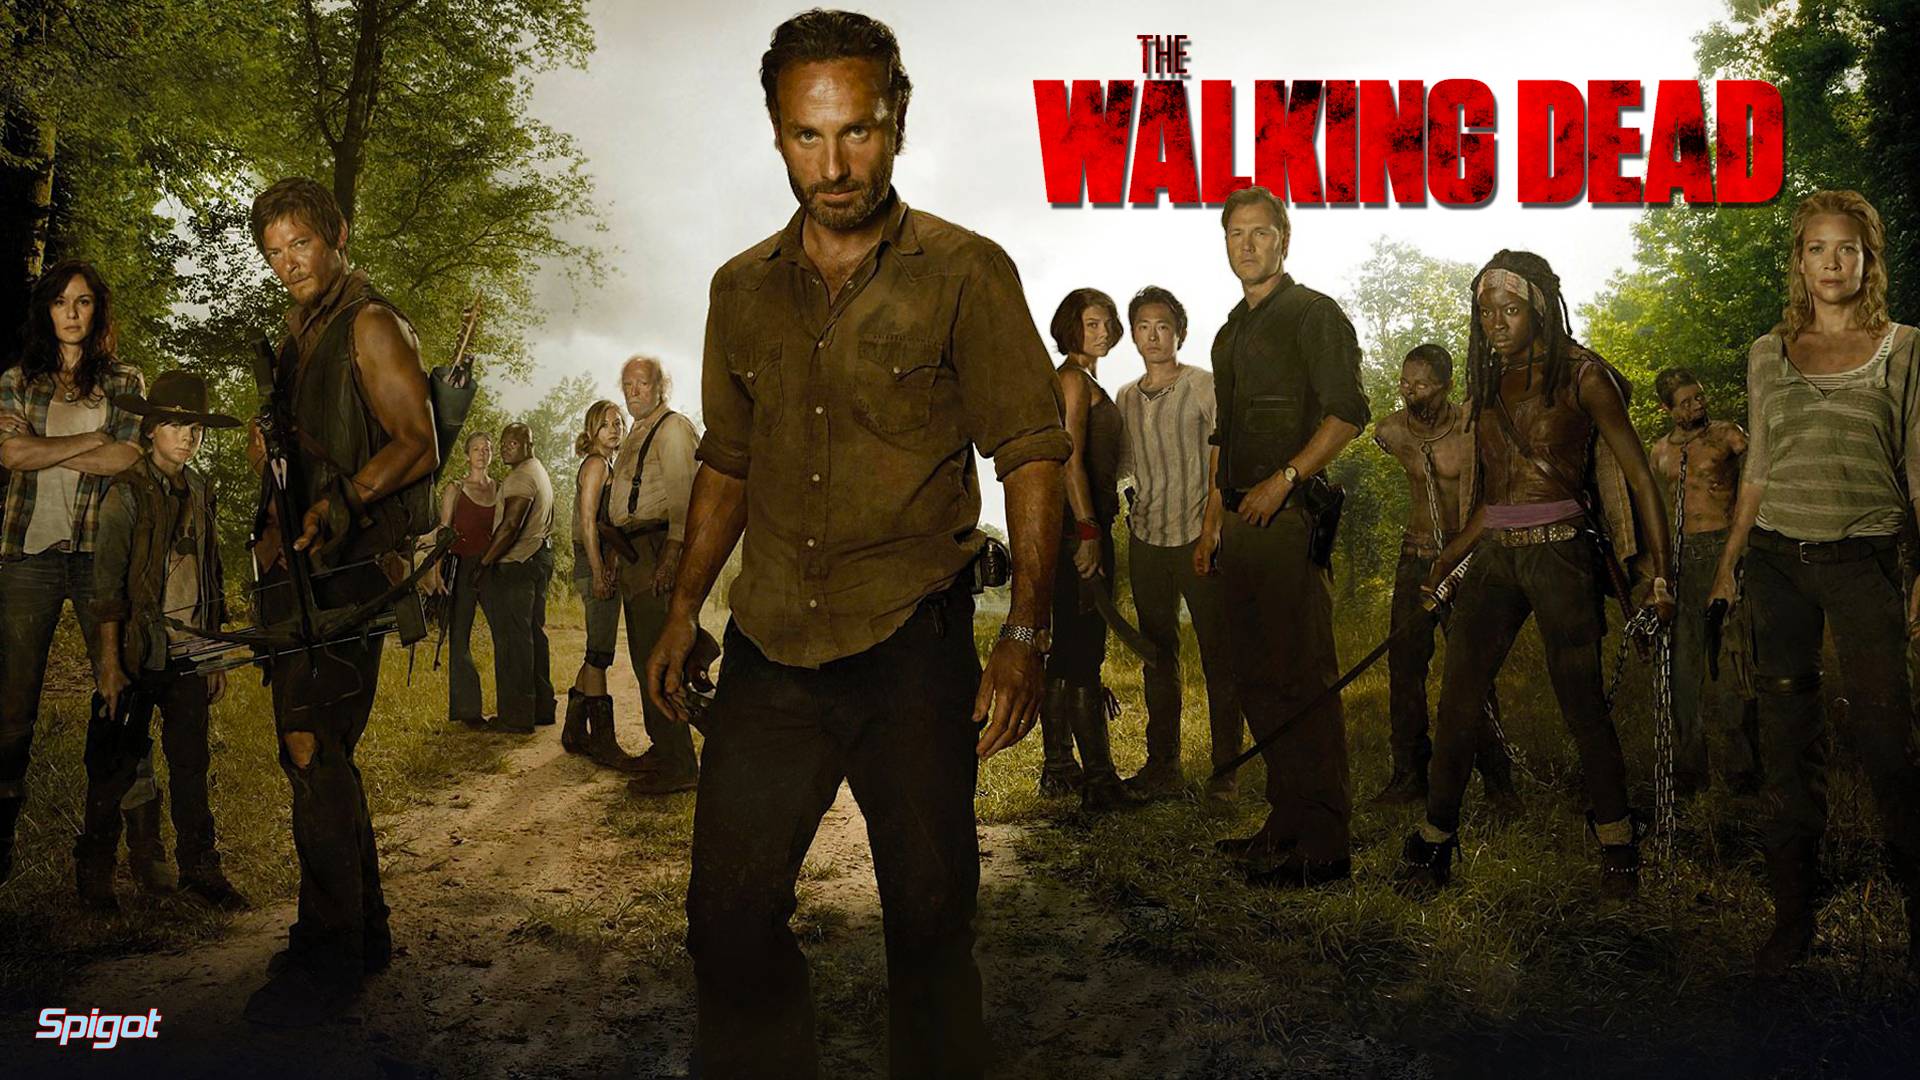 THE WALKING DEAD (2013) Tv Show HD Wallpaper